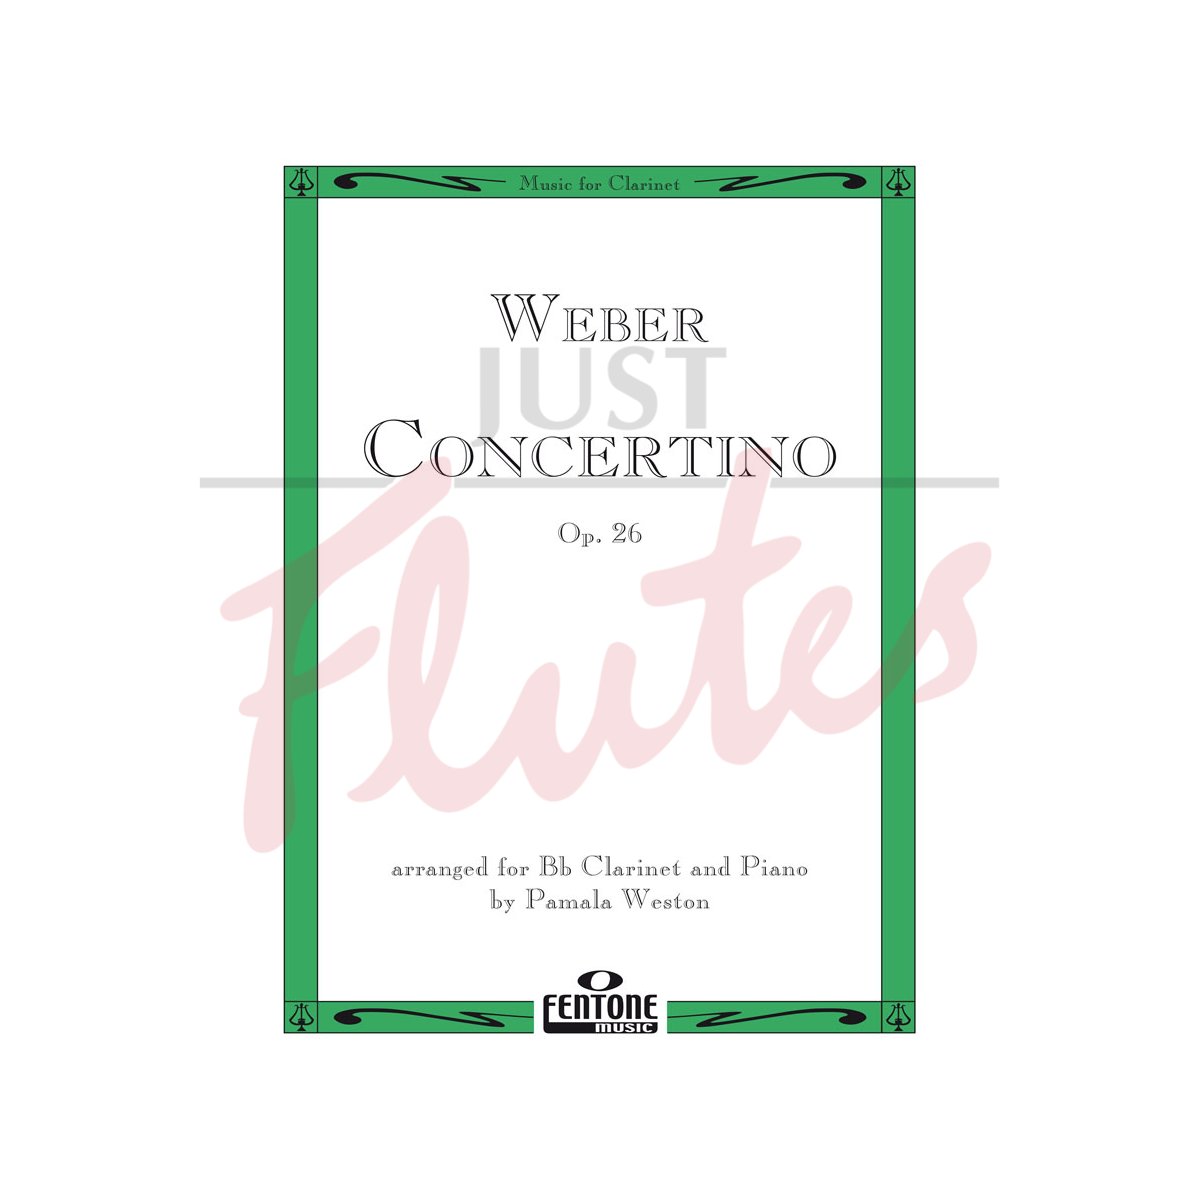 Concertino in E flat major